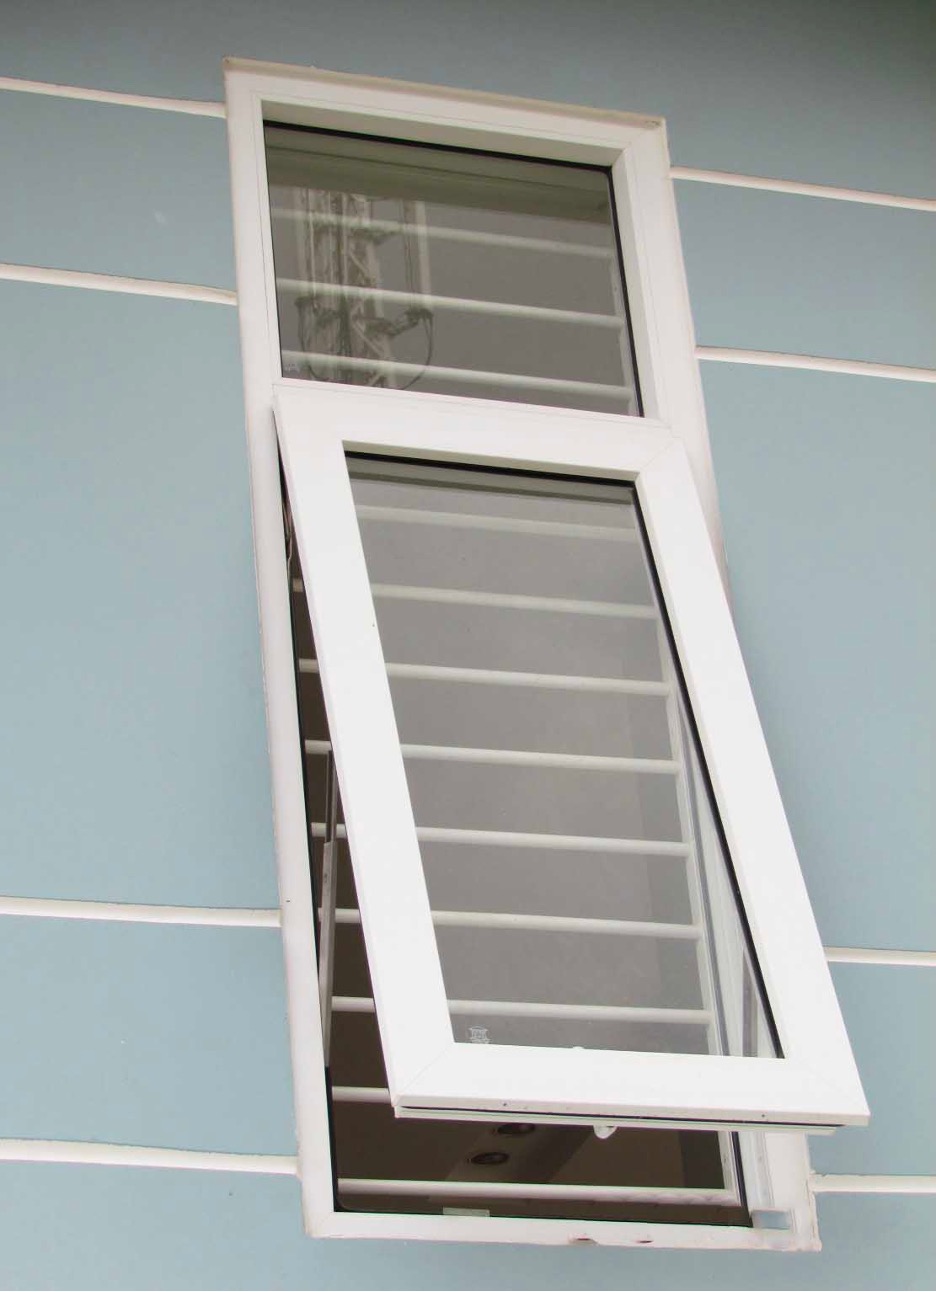 Mẫu cửa sổ 1 cánh đẹp làm từ nhôm kính được ứng dụng rất phổ biến